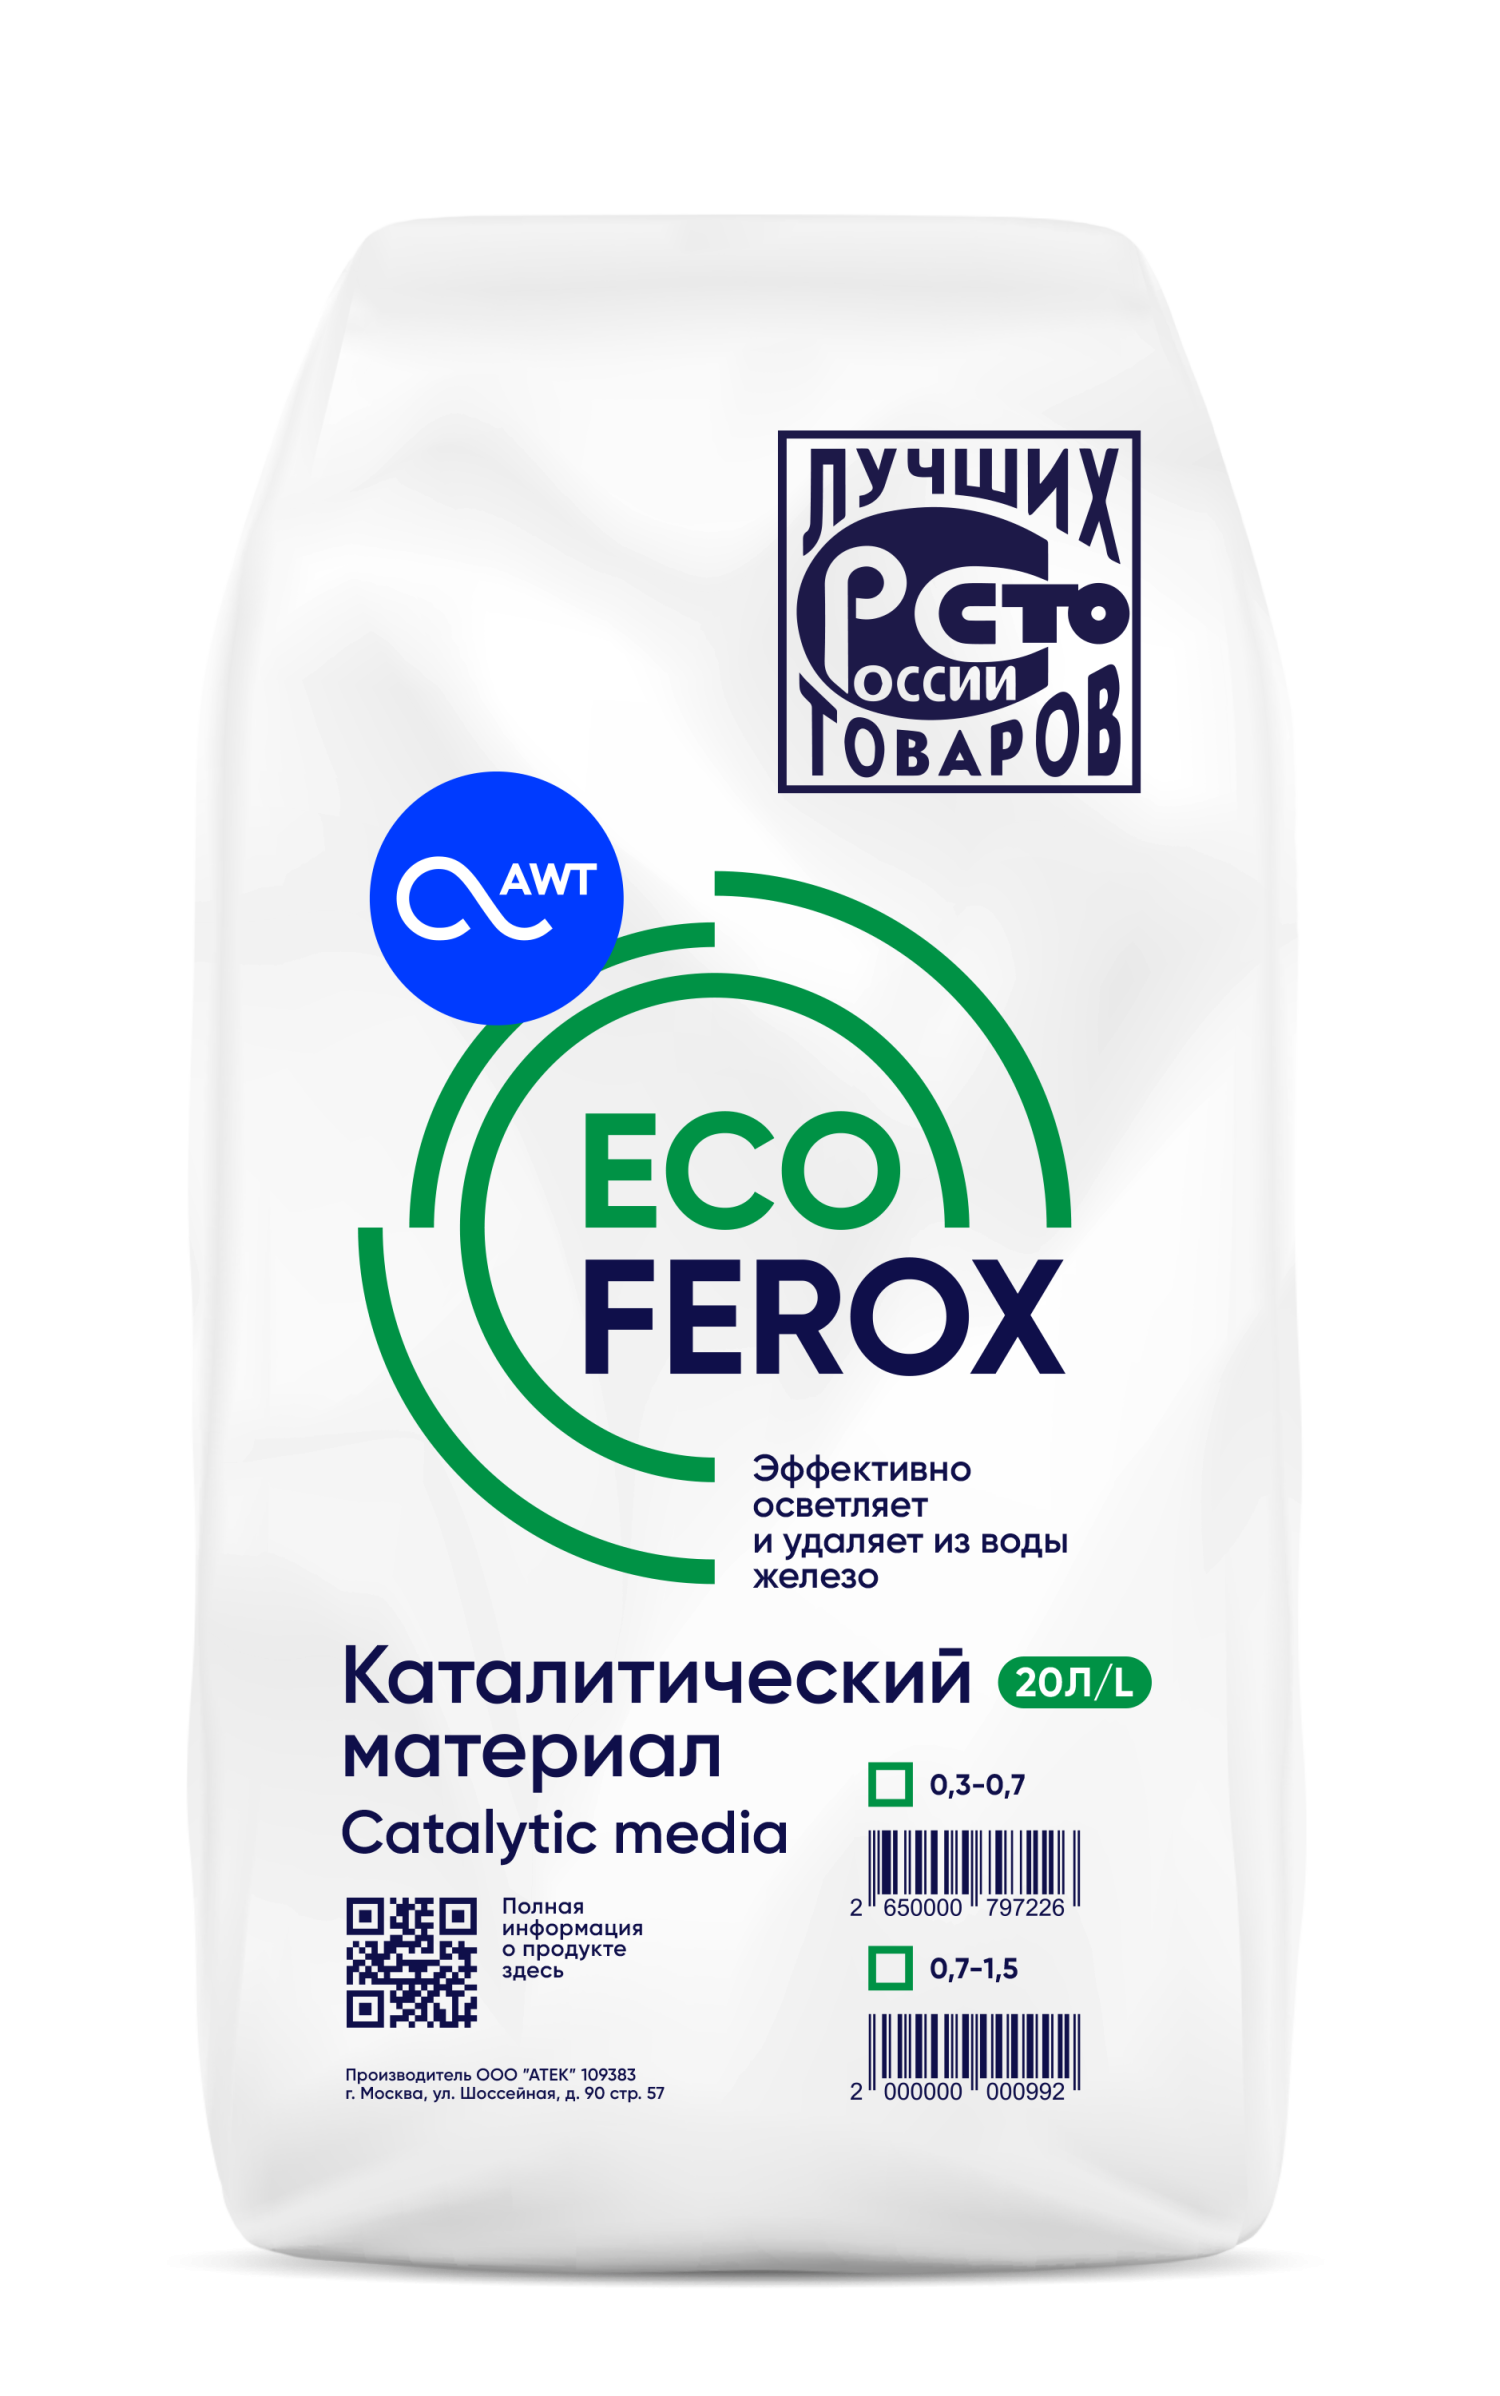 ЭкоФерокс (ecoferox, фракция 0,7-1,5 мм, 20литров, 11-13 кг ), осветление и обезжелезивание, цеолит